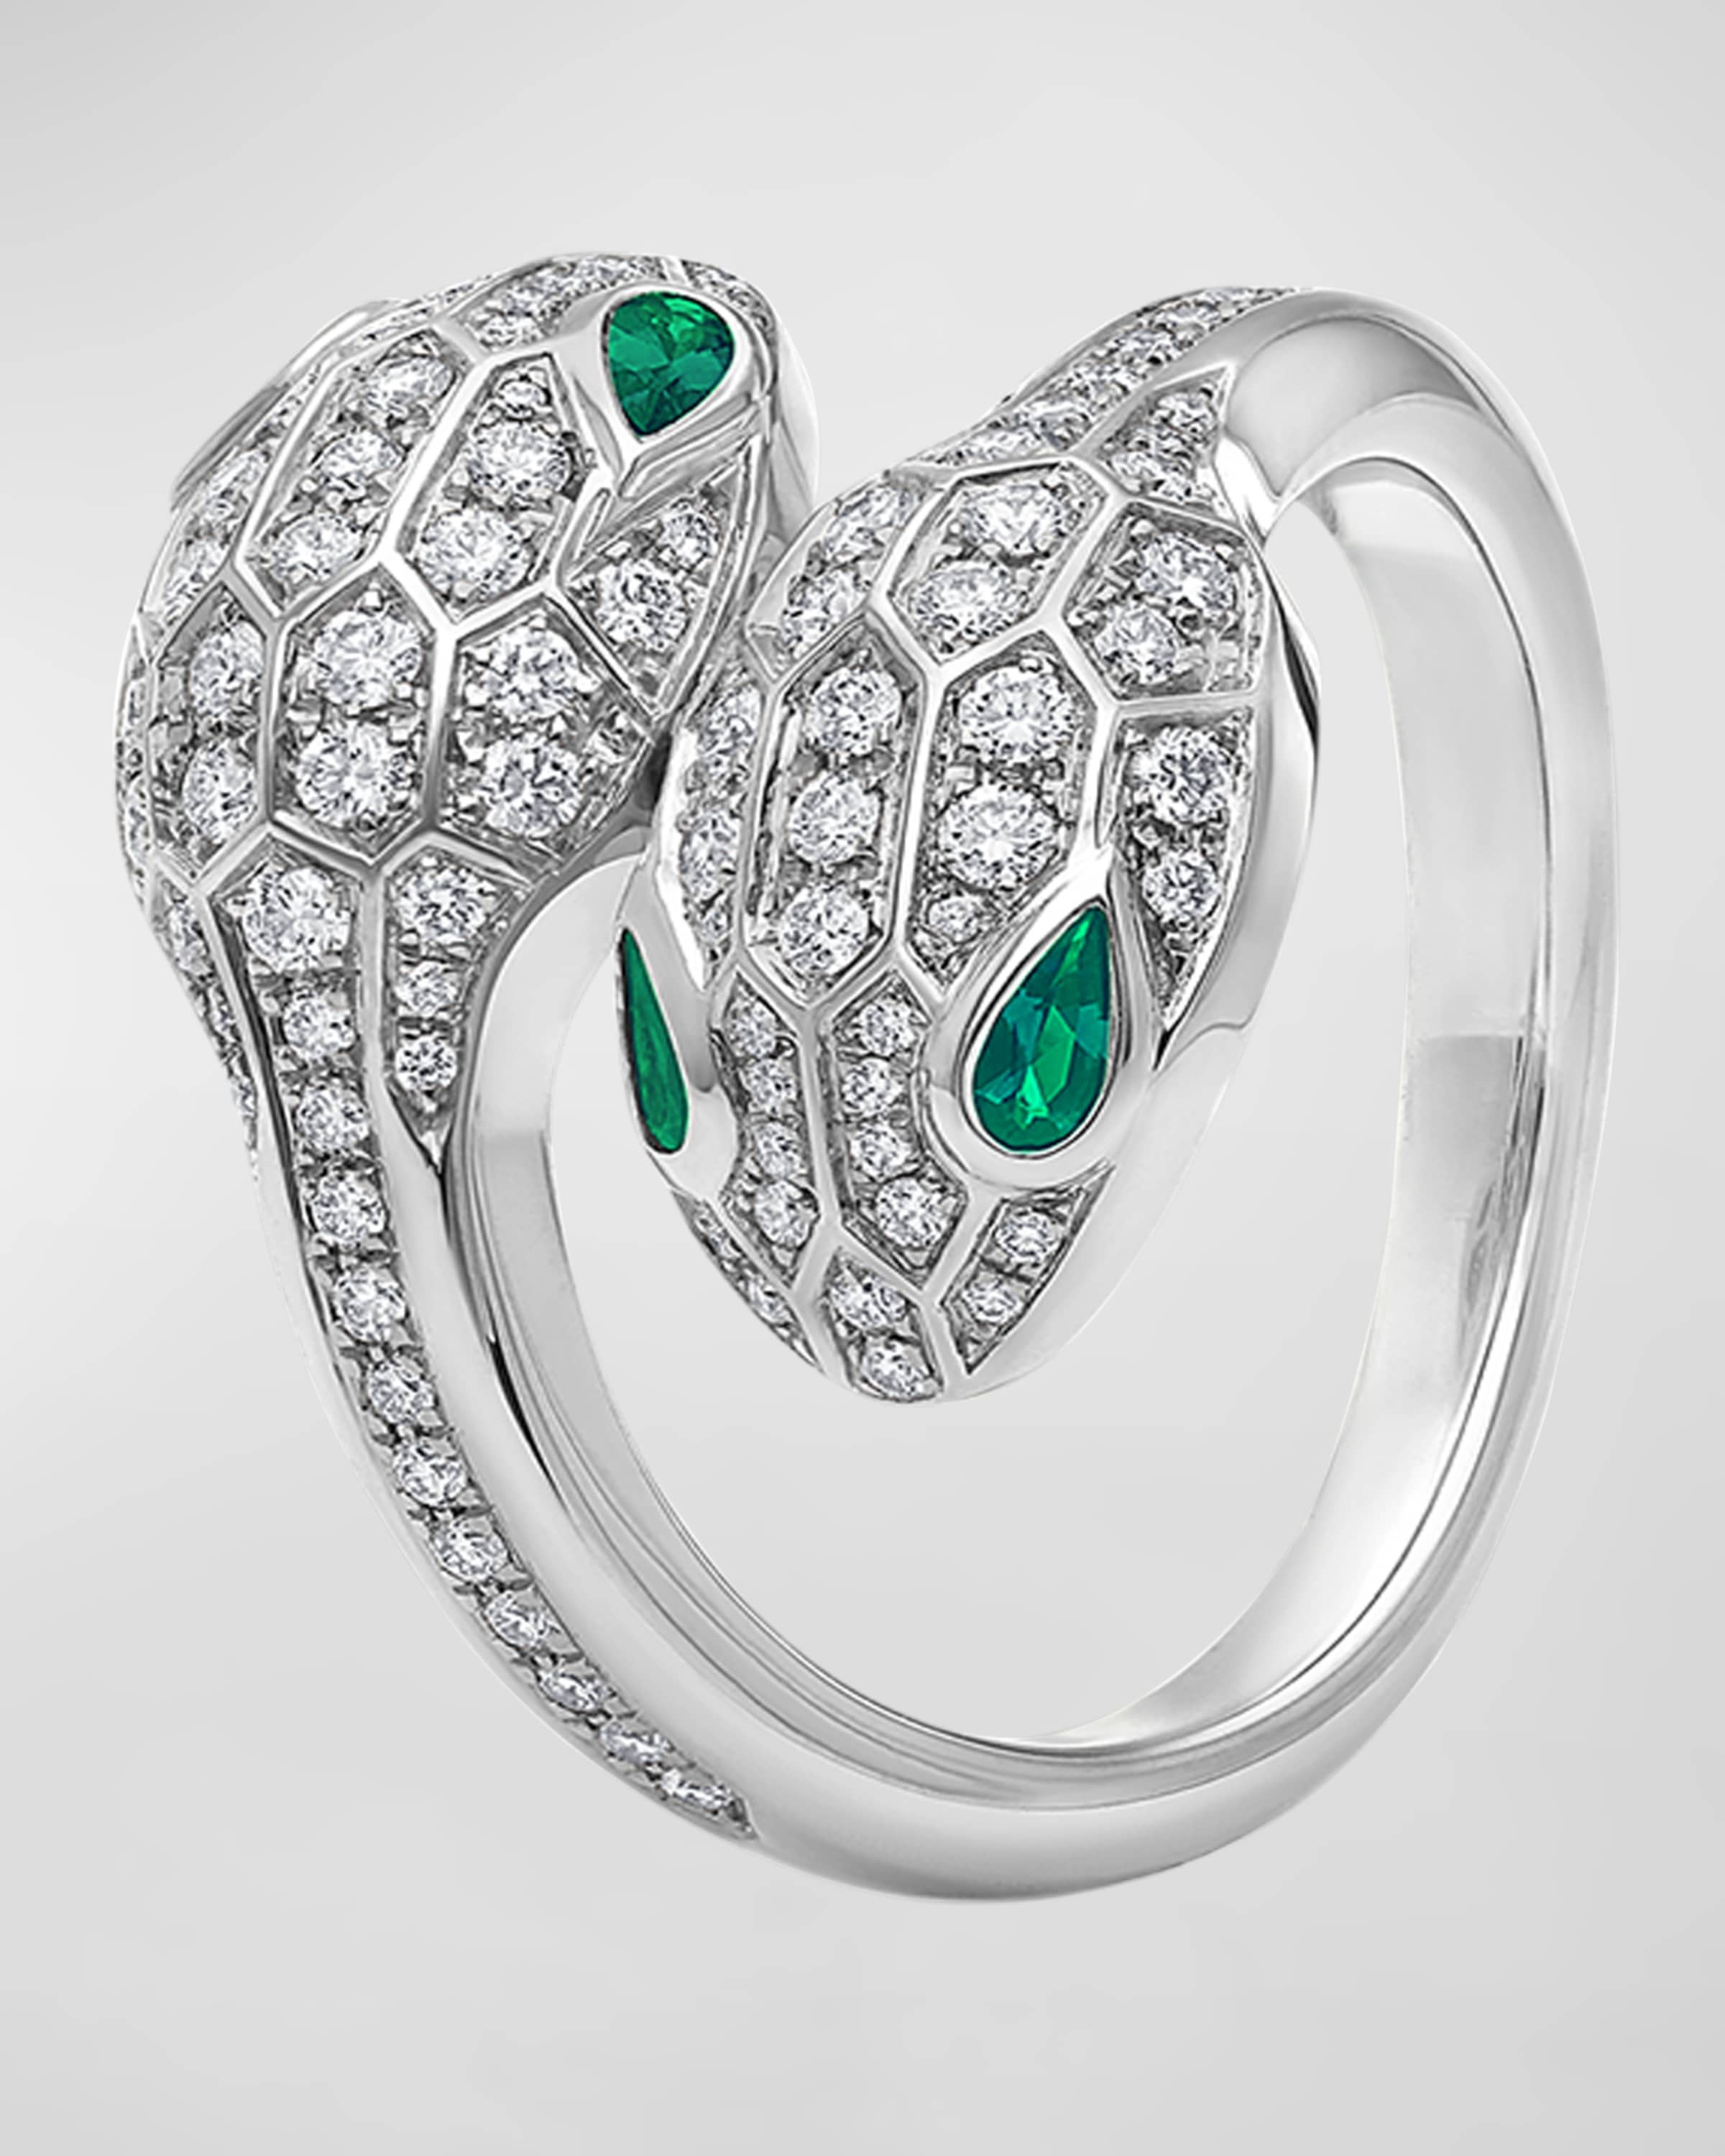 Serpenti Seduttori Ring with Emeralds and Diamonds, EU 50 / US 6.25 - 1